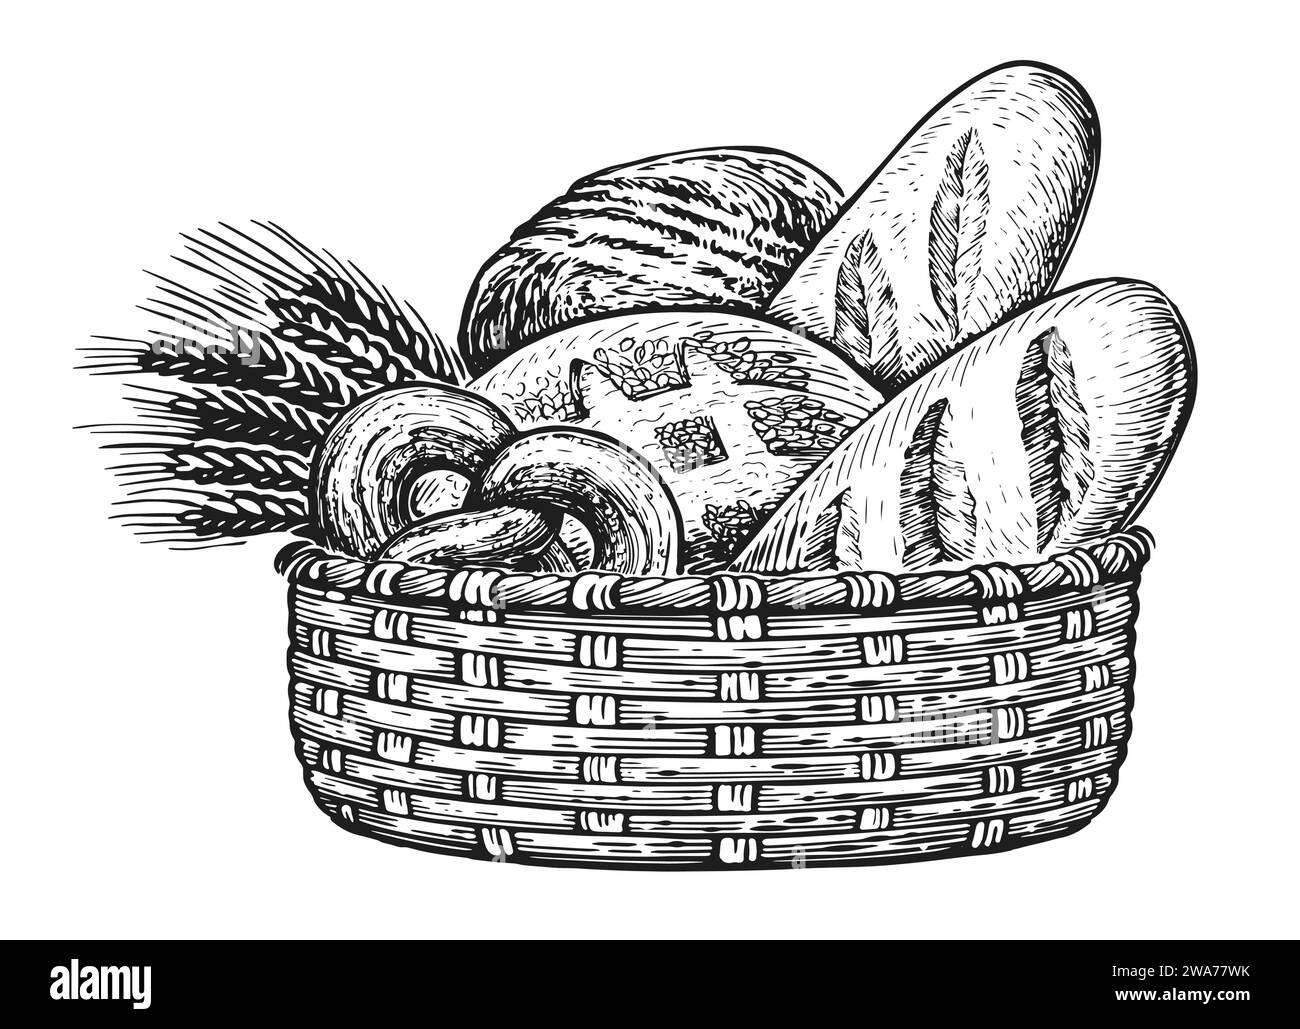 Prodotti da forno freschi nel cestino. Illustrazione vintage di pane e orecchie di grano Illustrazione Vettoriale